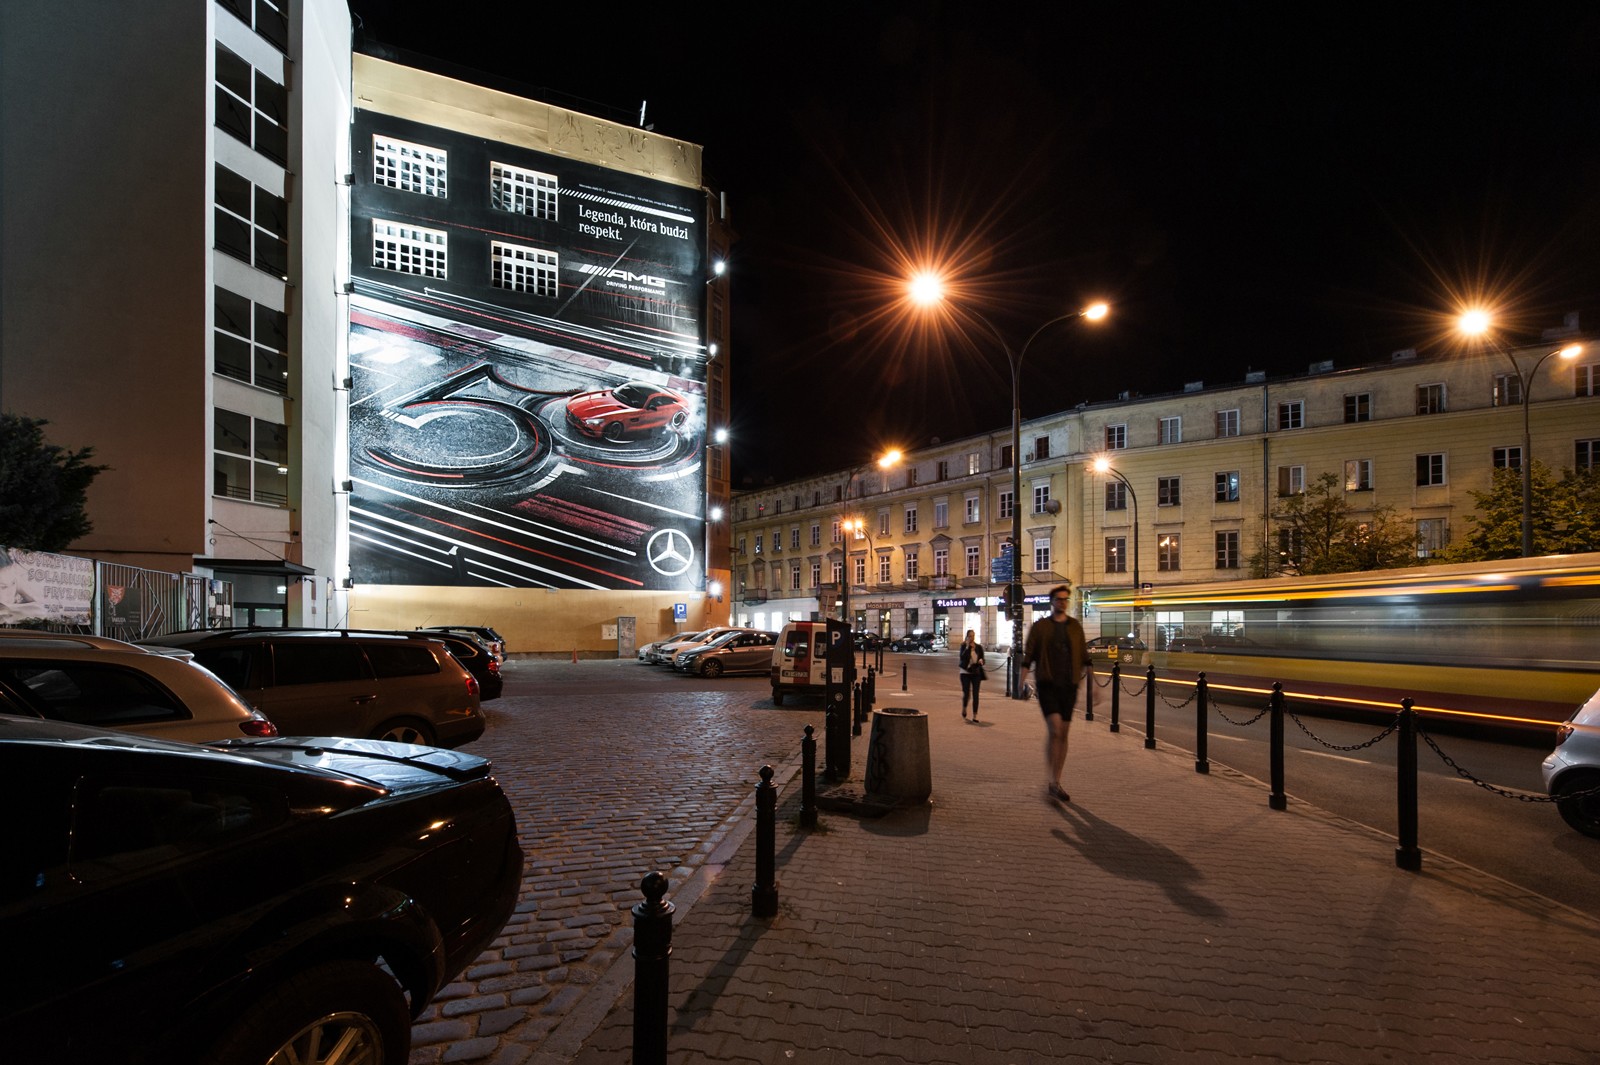 Widok nocny z ulicy Kruczej na Dom Towarowy Braci Jabłkowskich przy ulicy Brackiej 25 w Warszawie z namalowanym muralem dla Mercedes Benz Polska | Kampania z wykorzystaniem murali na zlecenie Mercedes-Benz Polska | Portfolio